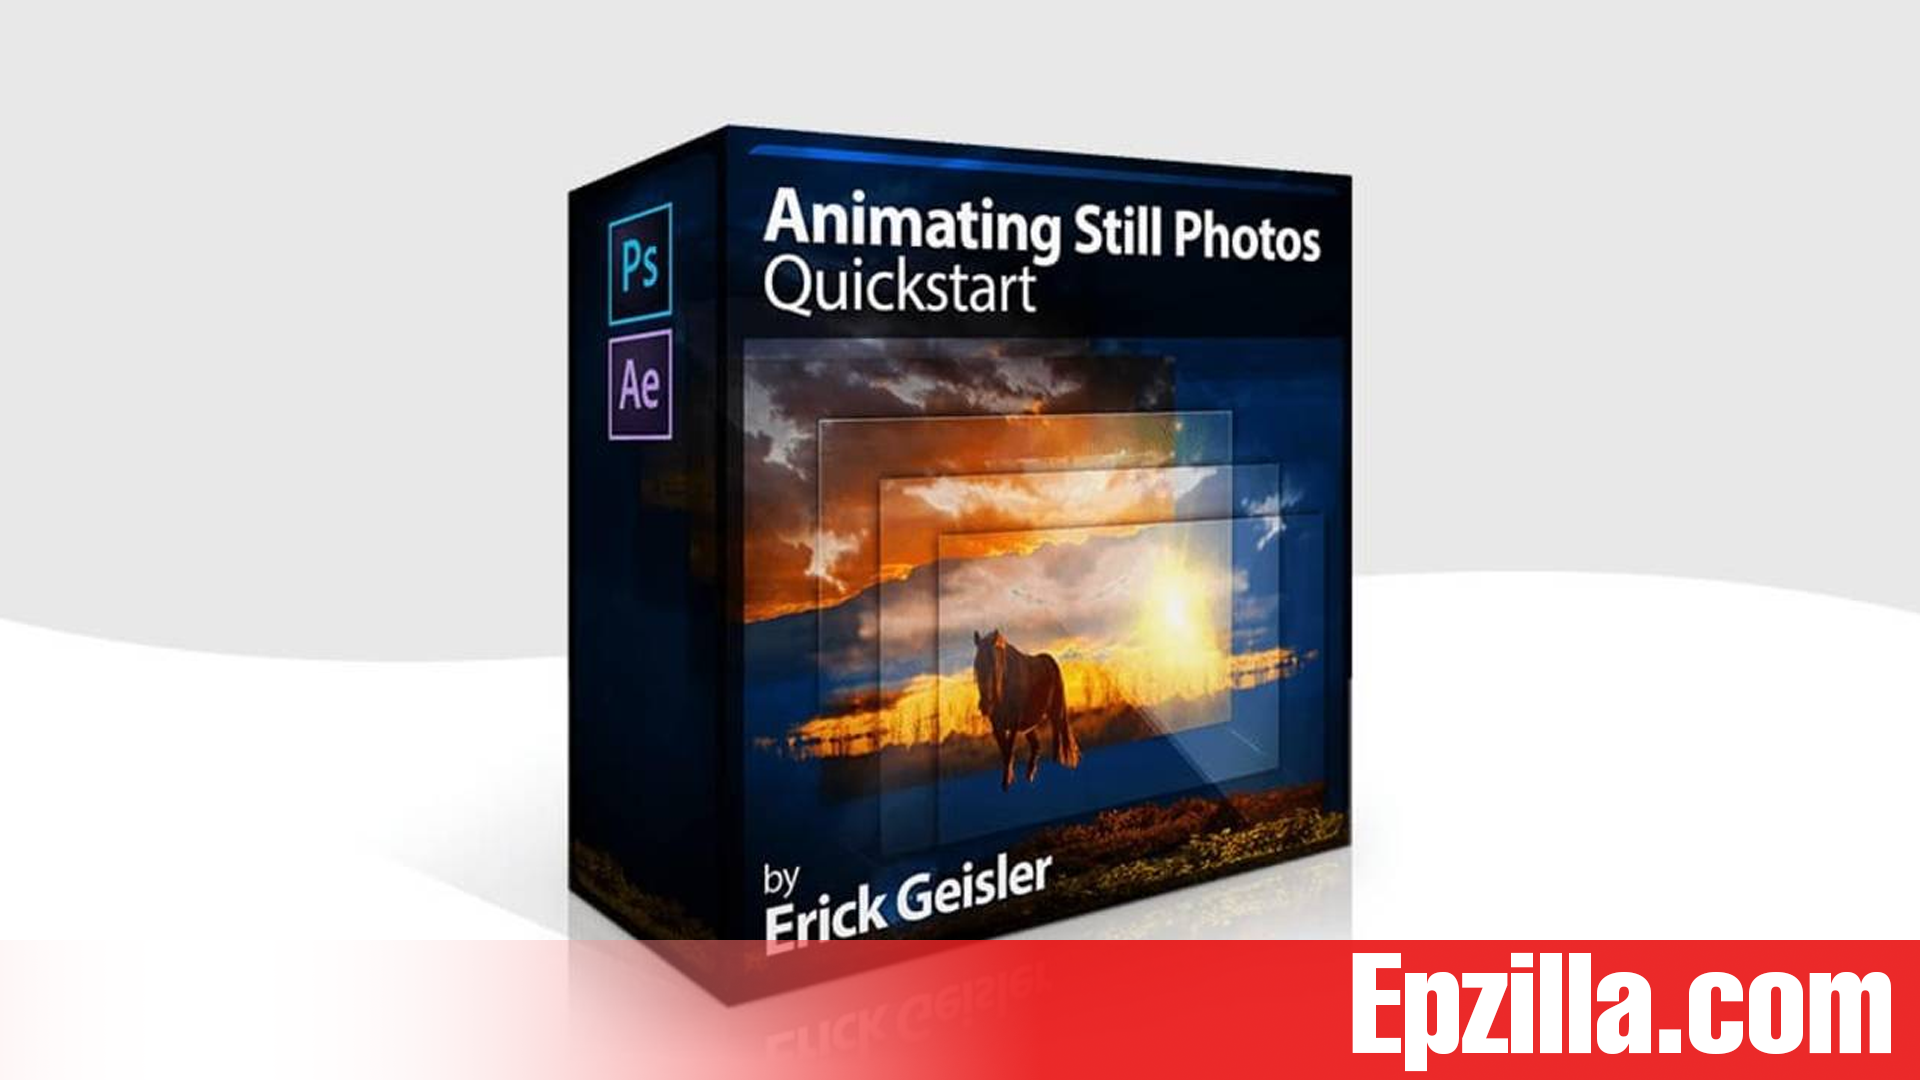 Photoserge-Animating-Still-Photos-Quickstart-With-Erick-Geisler-Free-Download-Epzilla.com